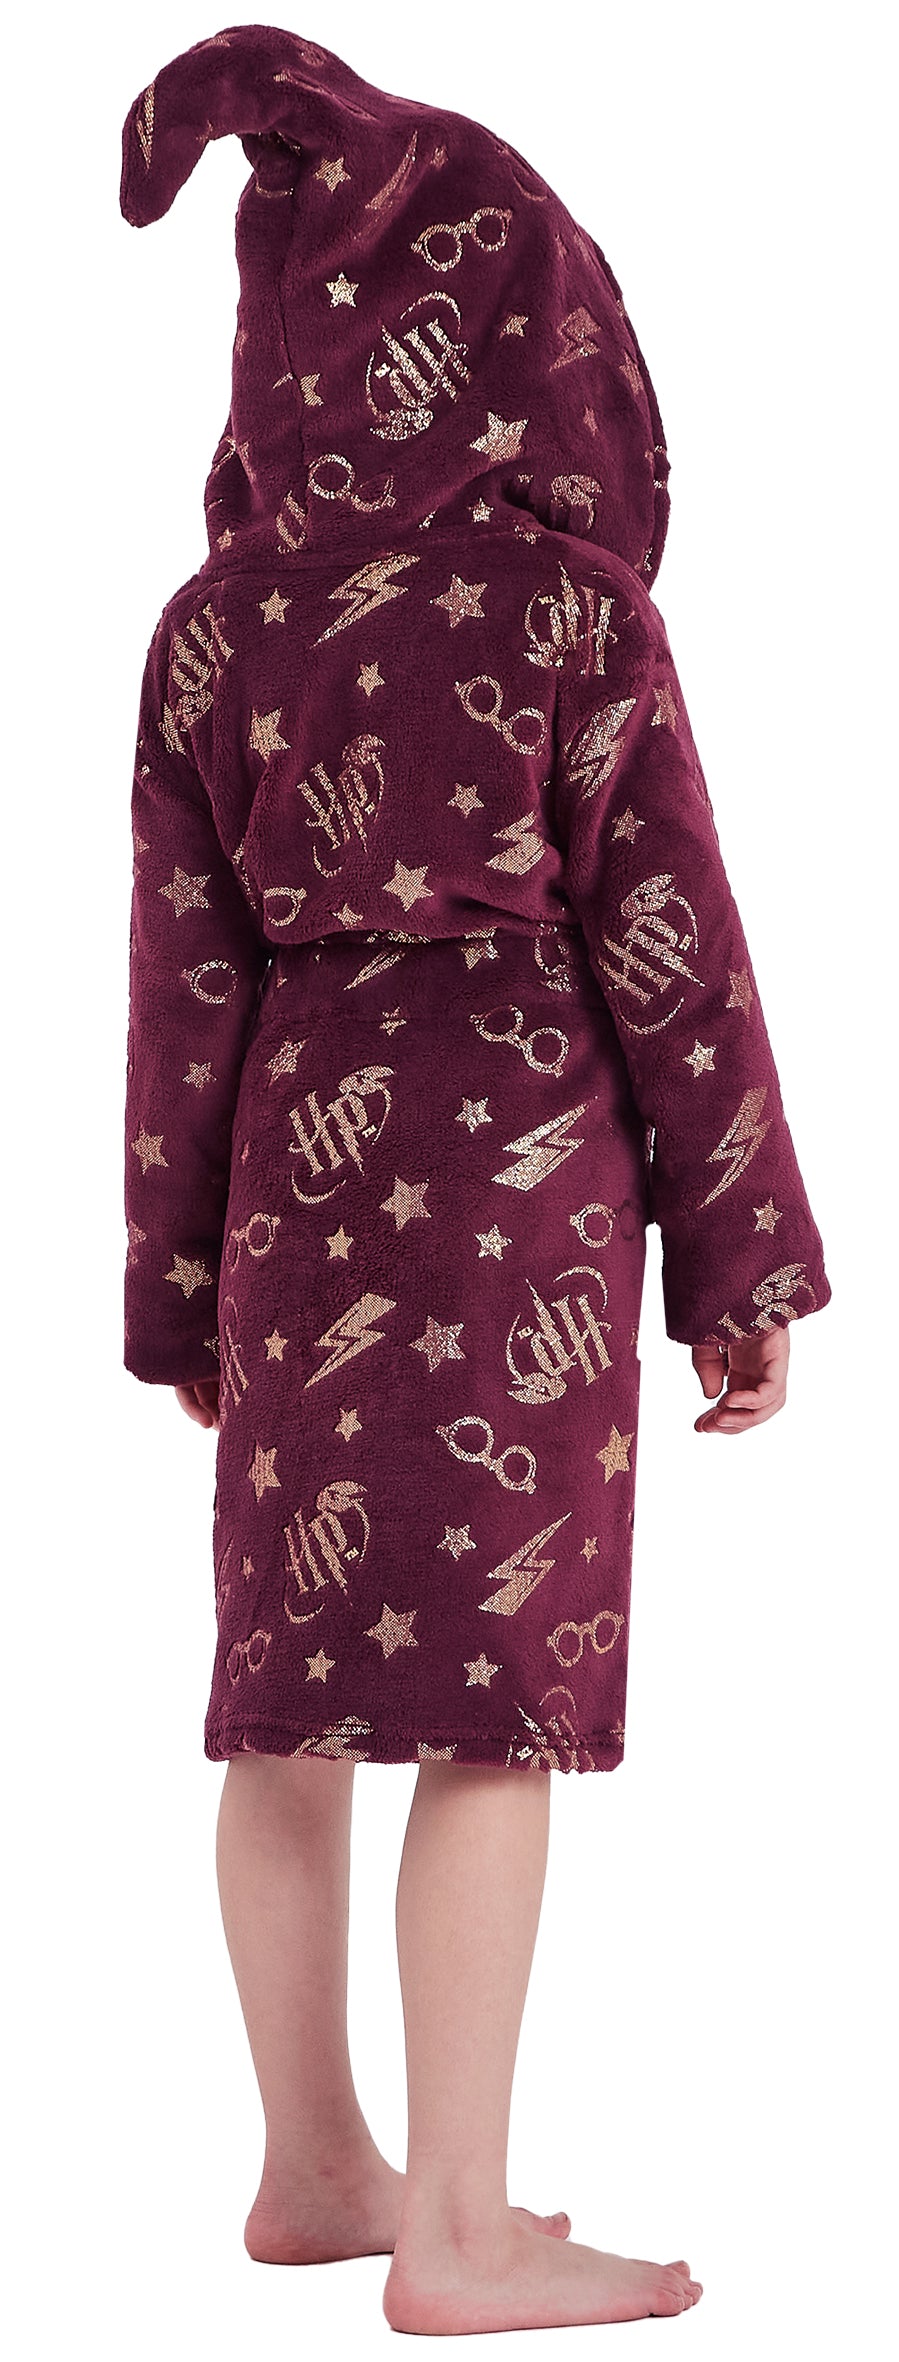 Childrens Harry Potter Dressing Gown & Pyjama Set Bundle - Back to Hogwarts